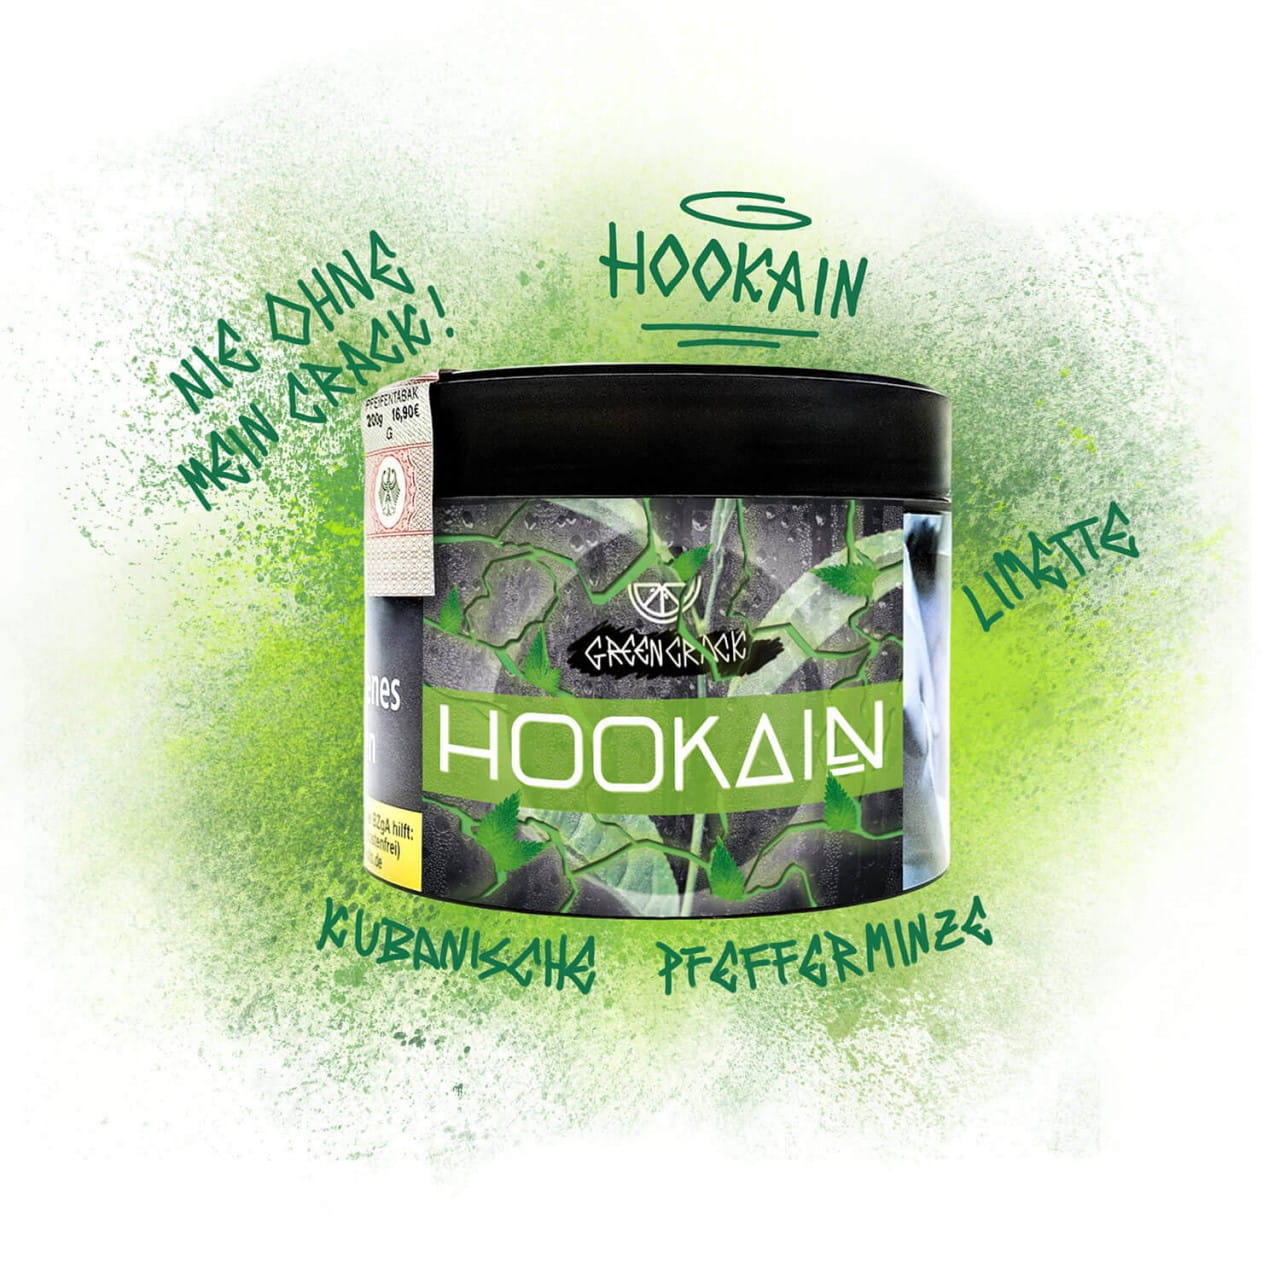 Hookain Tabak - Green Crack 200 g unter Shisha Tabak / Hookain Tabak